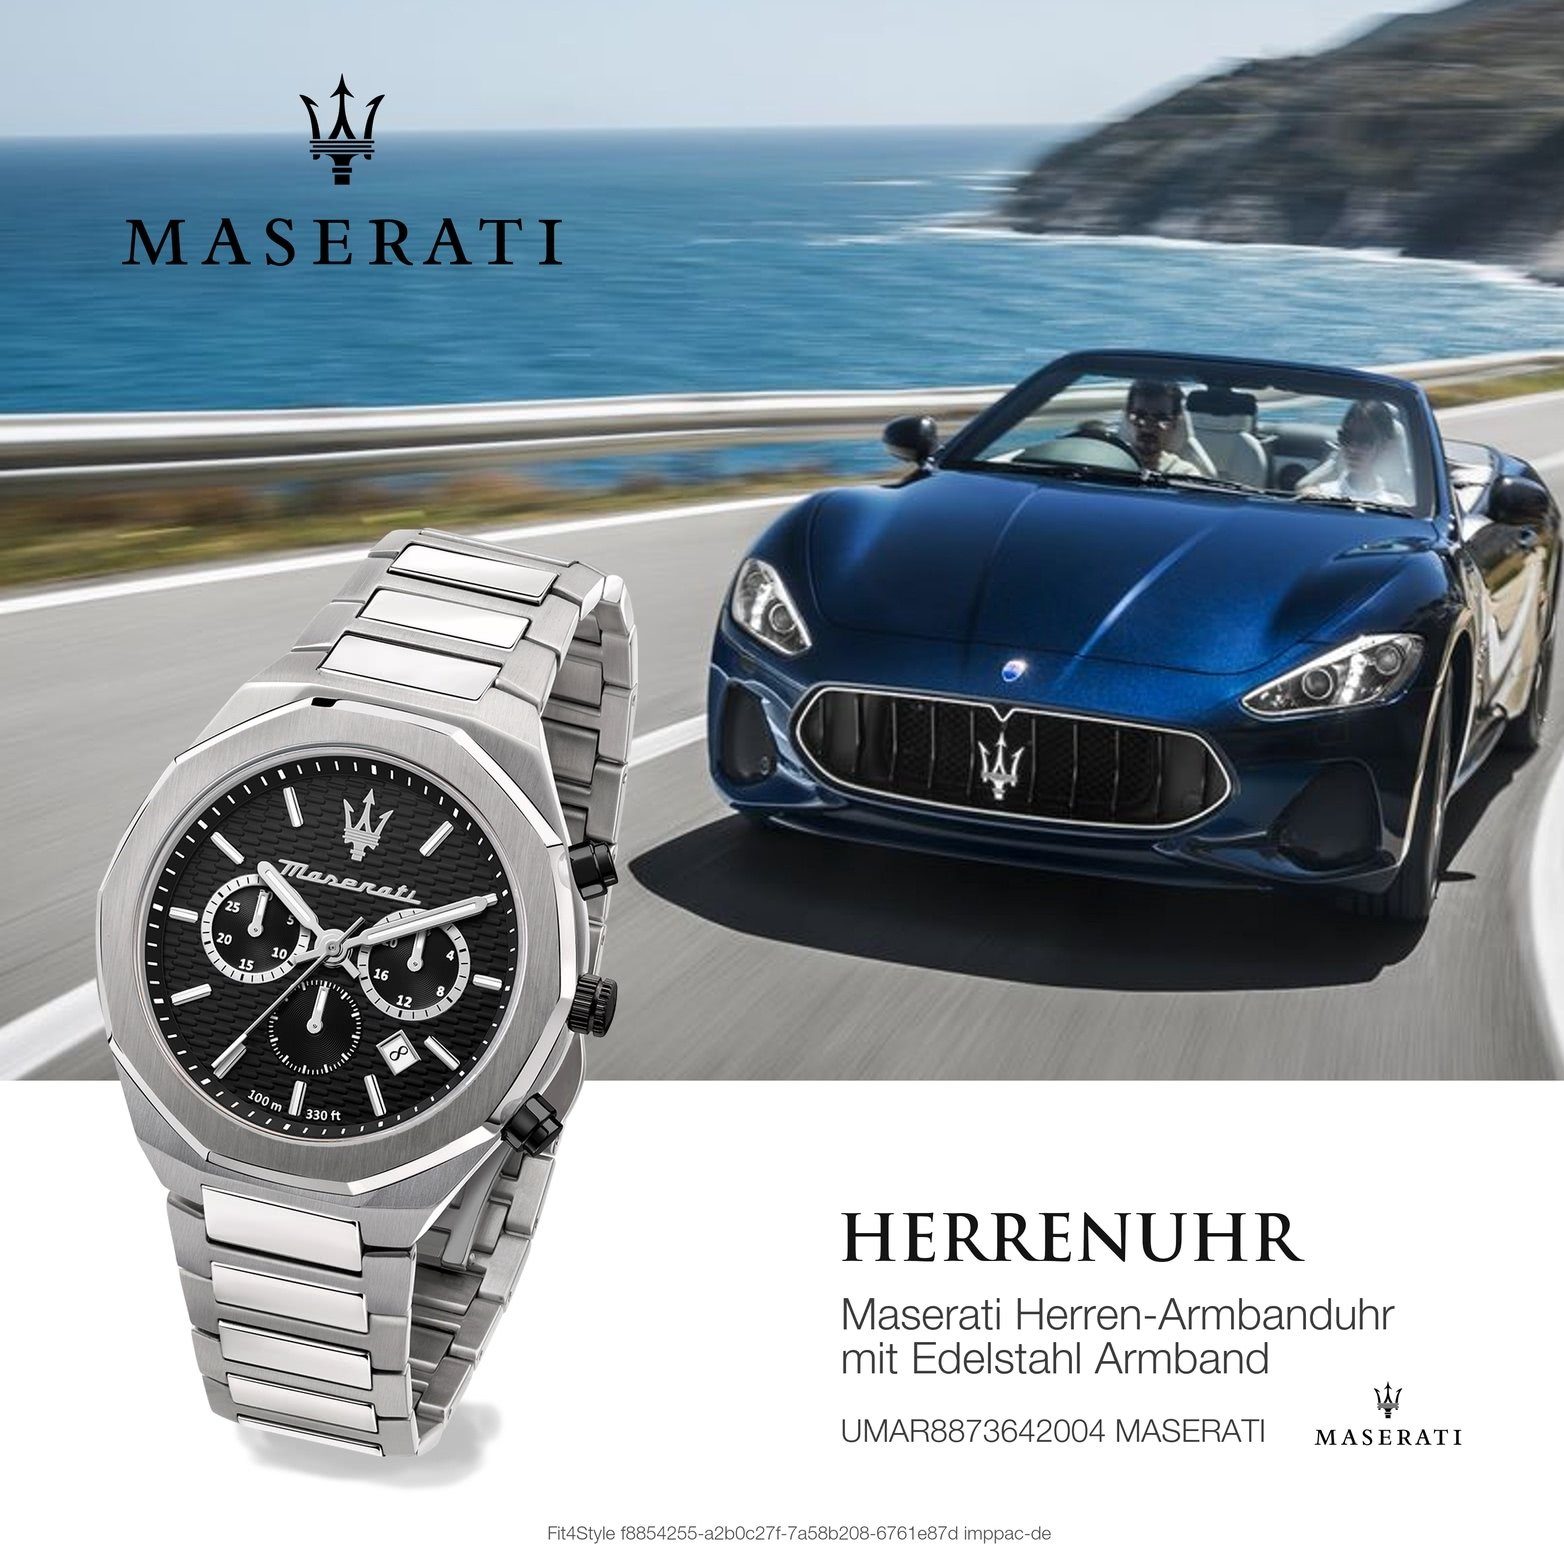 MASERATI Chronograph Maserati Herrenuhr Gehäuse, Edelstahl (ca. rundes Armband-Uhr, groß Edelstahlarmband, 45mm) schwarz